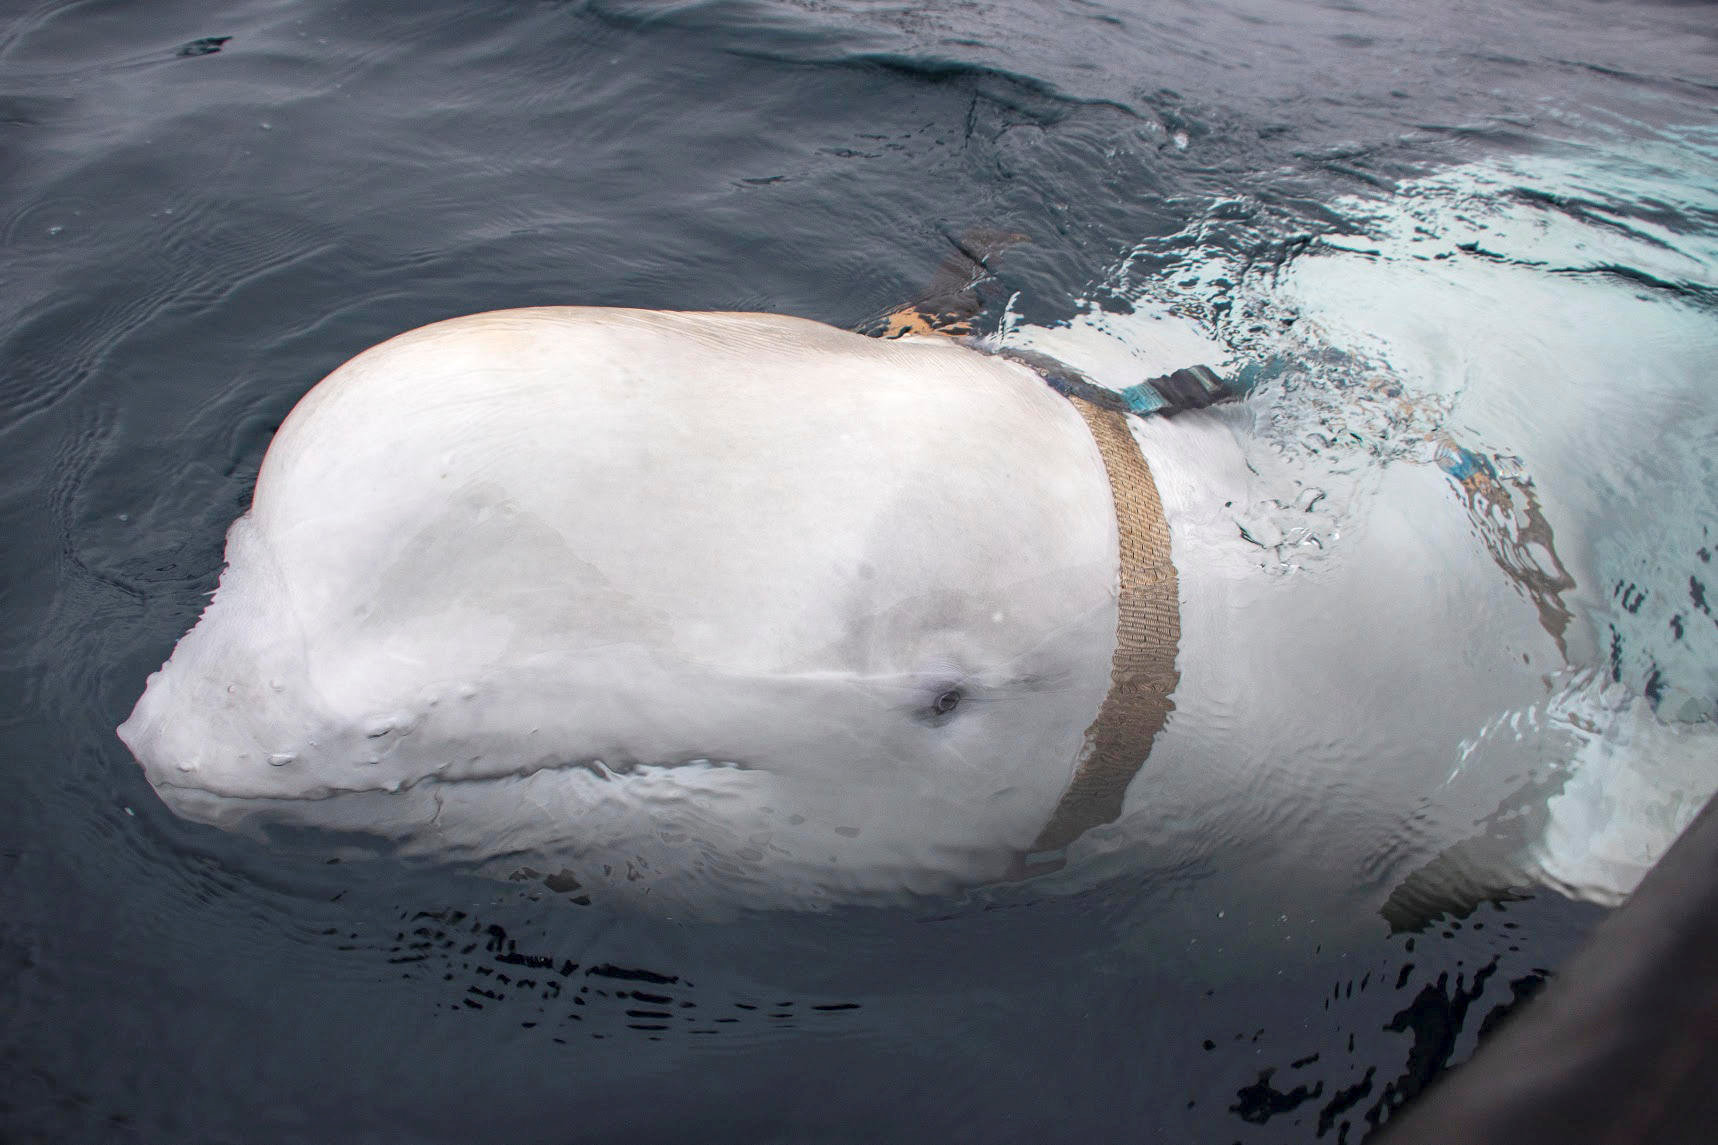 Hallaron una ballena atada a un arnés ruso en Noruega (Fotos)